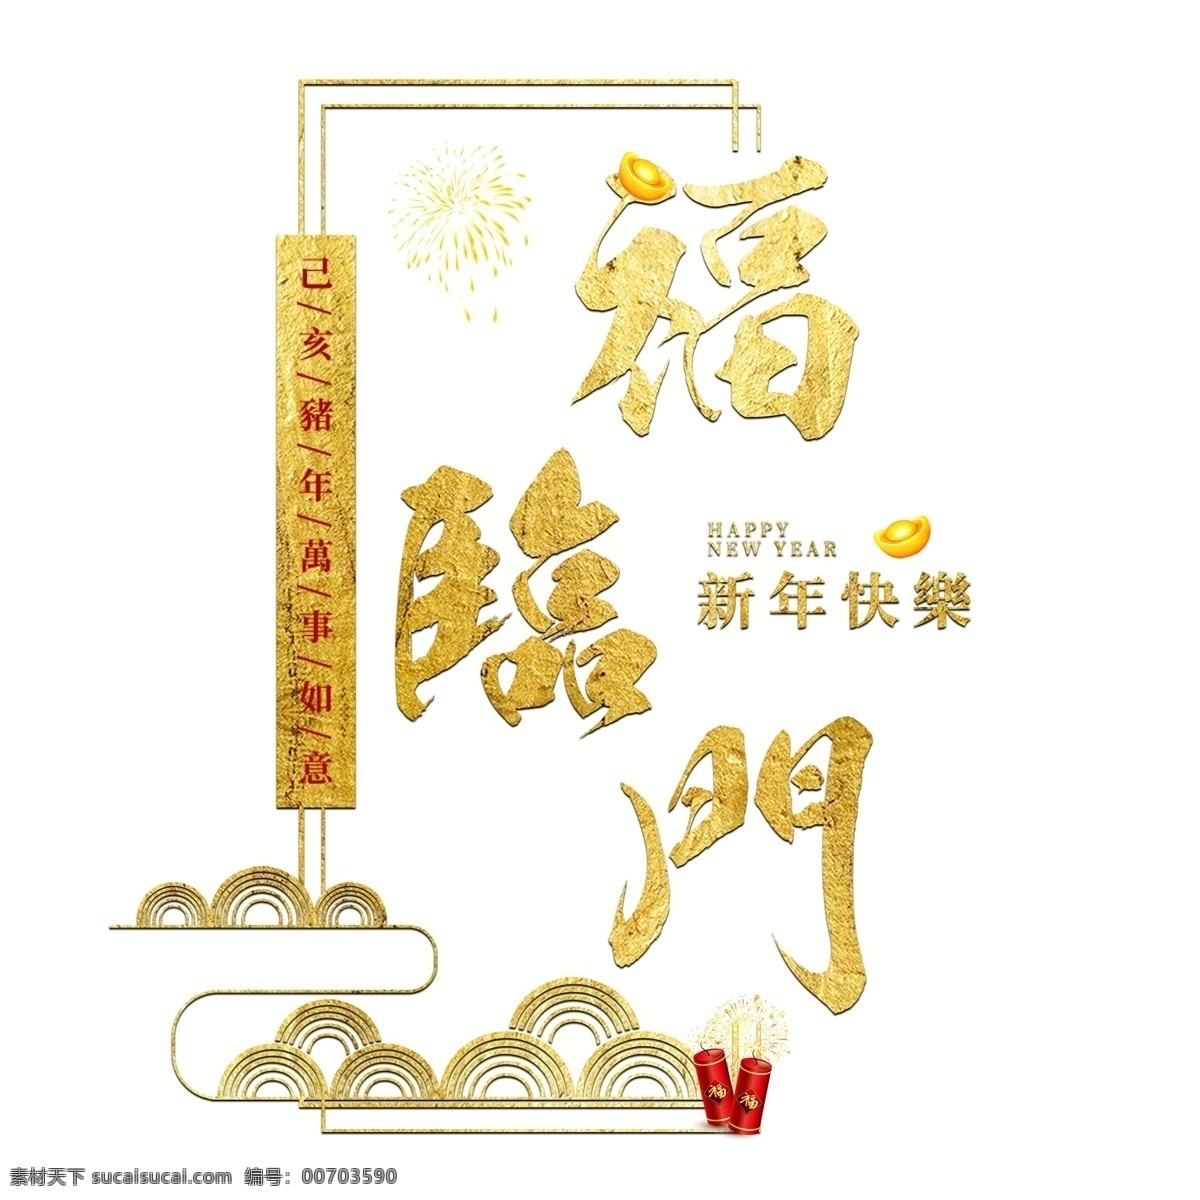 福临门 猪年 2019 新年 金色 红色 大气 喜庆 吉利 祝福